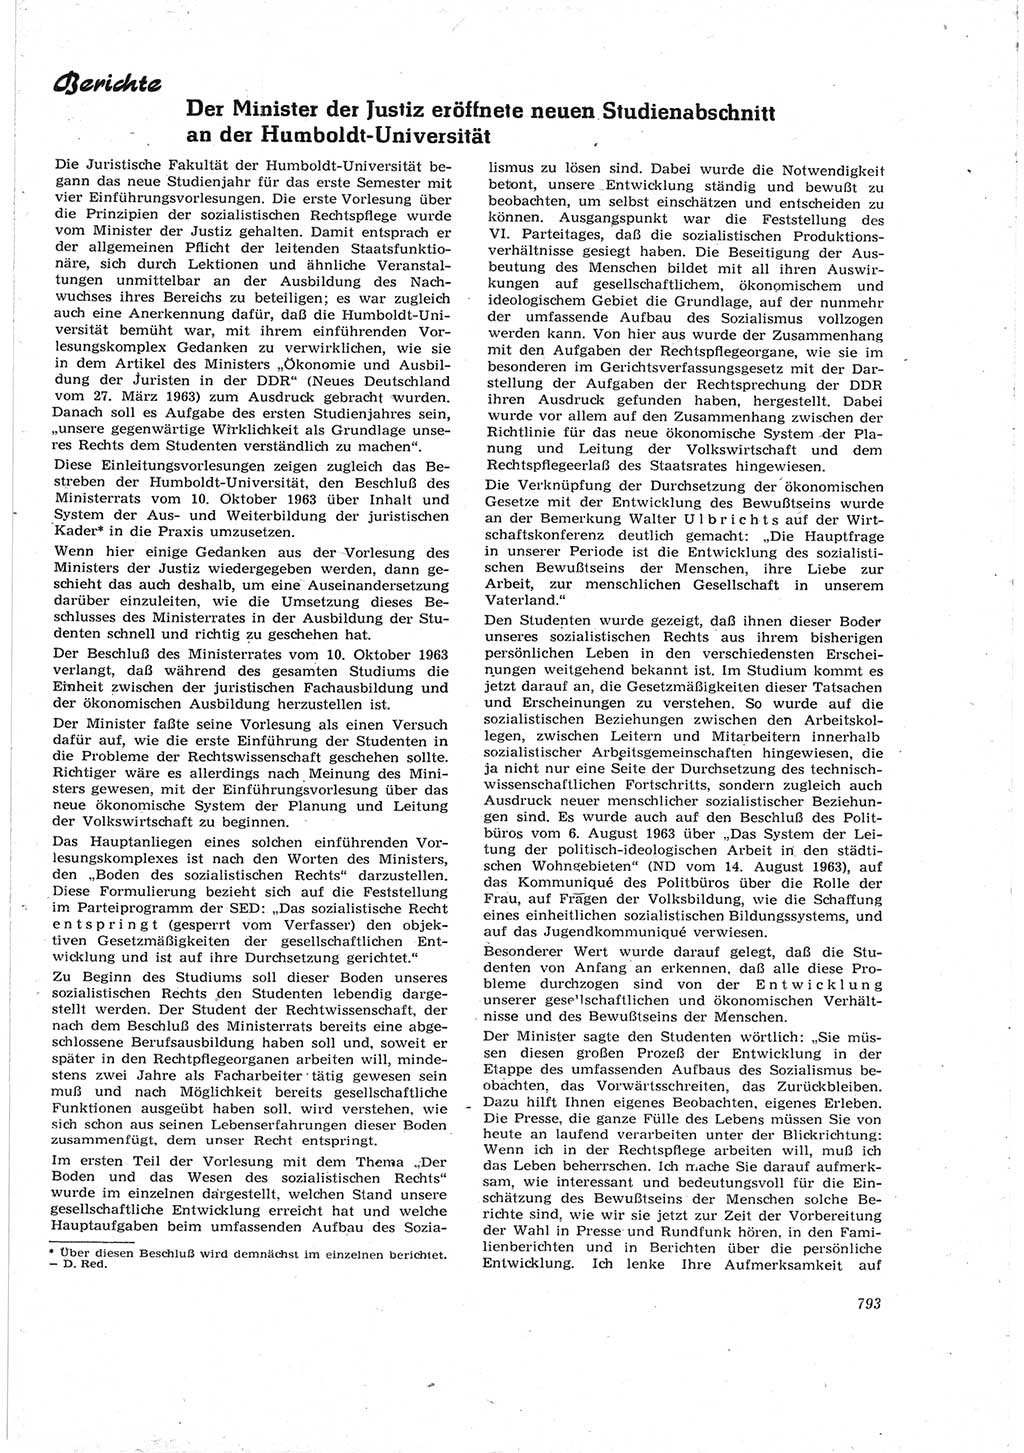 Neue Justiz (NJ), Zeitschrift für Recht und Rechtswissenschaft [Deutsche Demokratische Republik (DDR)], 17. Jahrgang 1963, Seite 793 (NJ DDR 1963, S. 793)